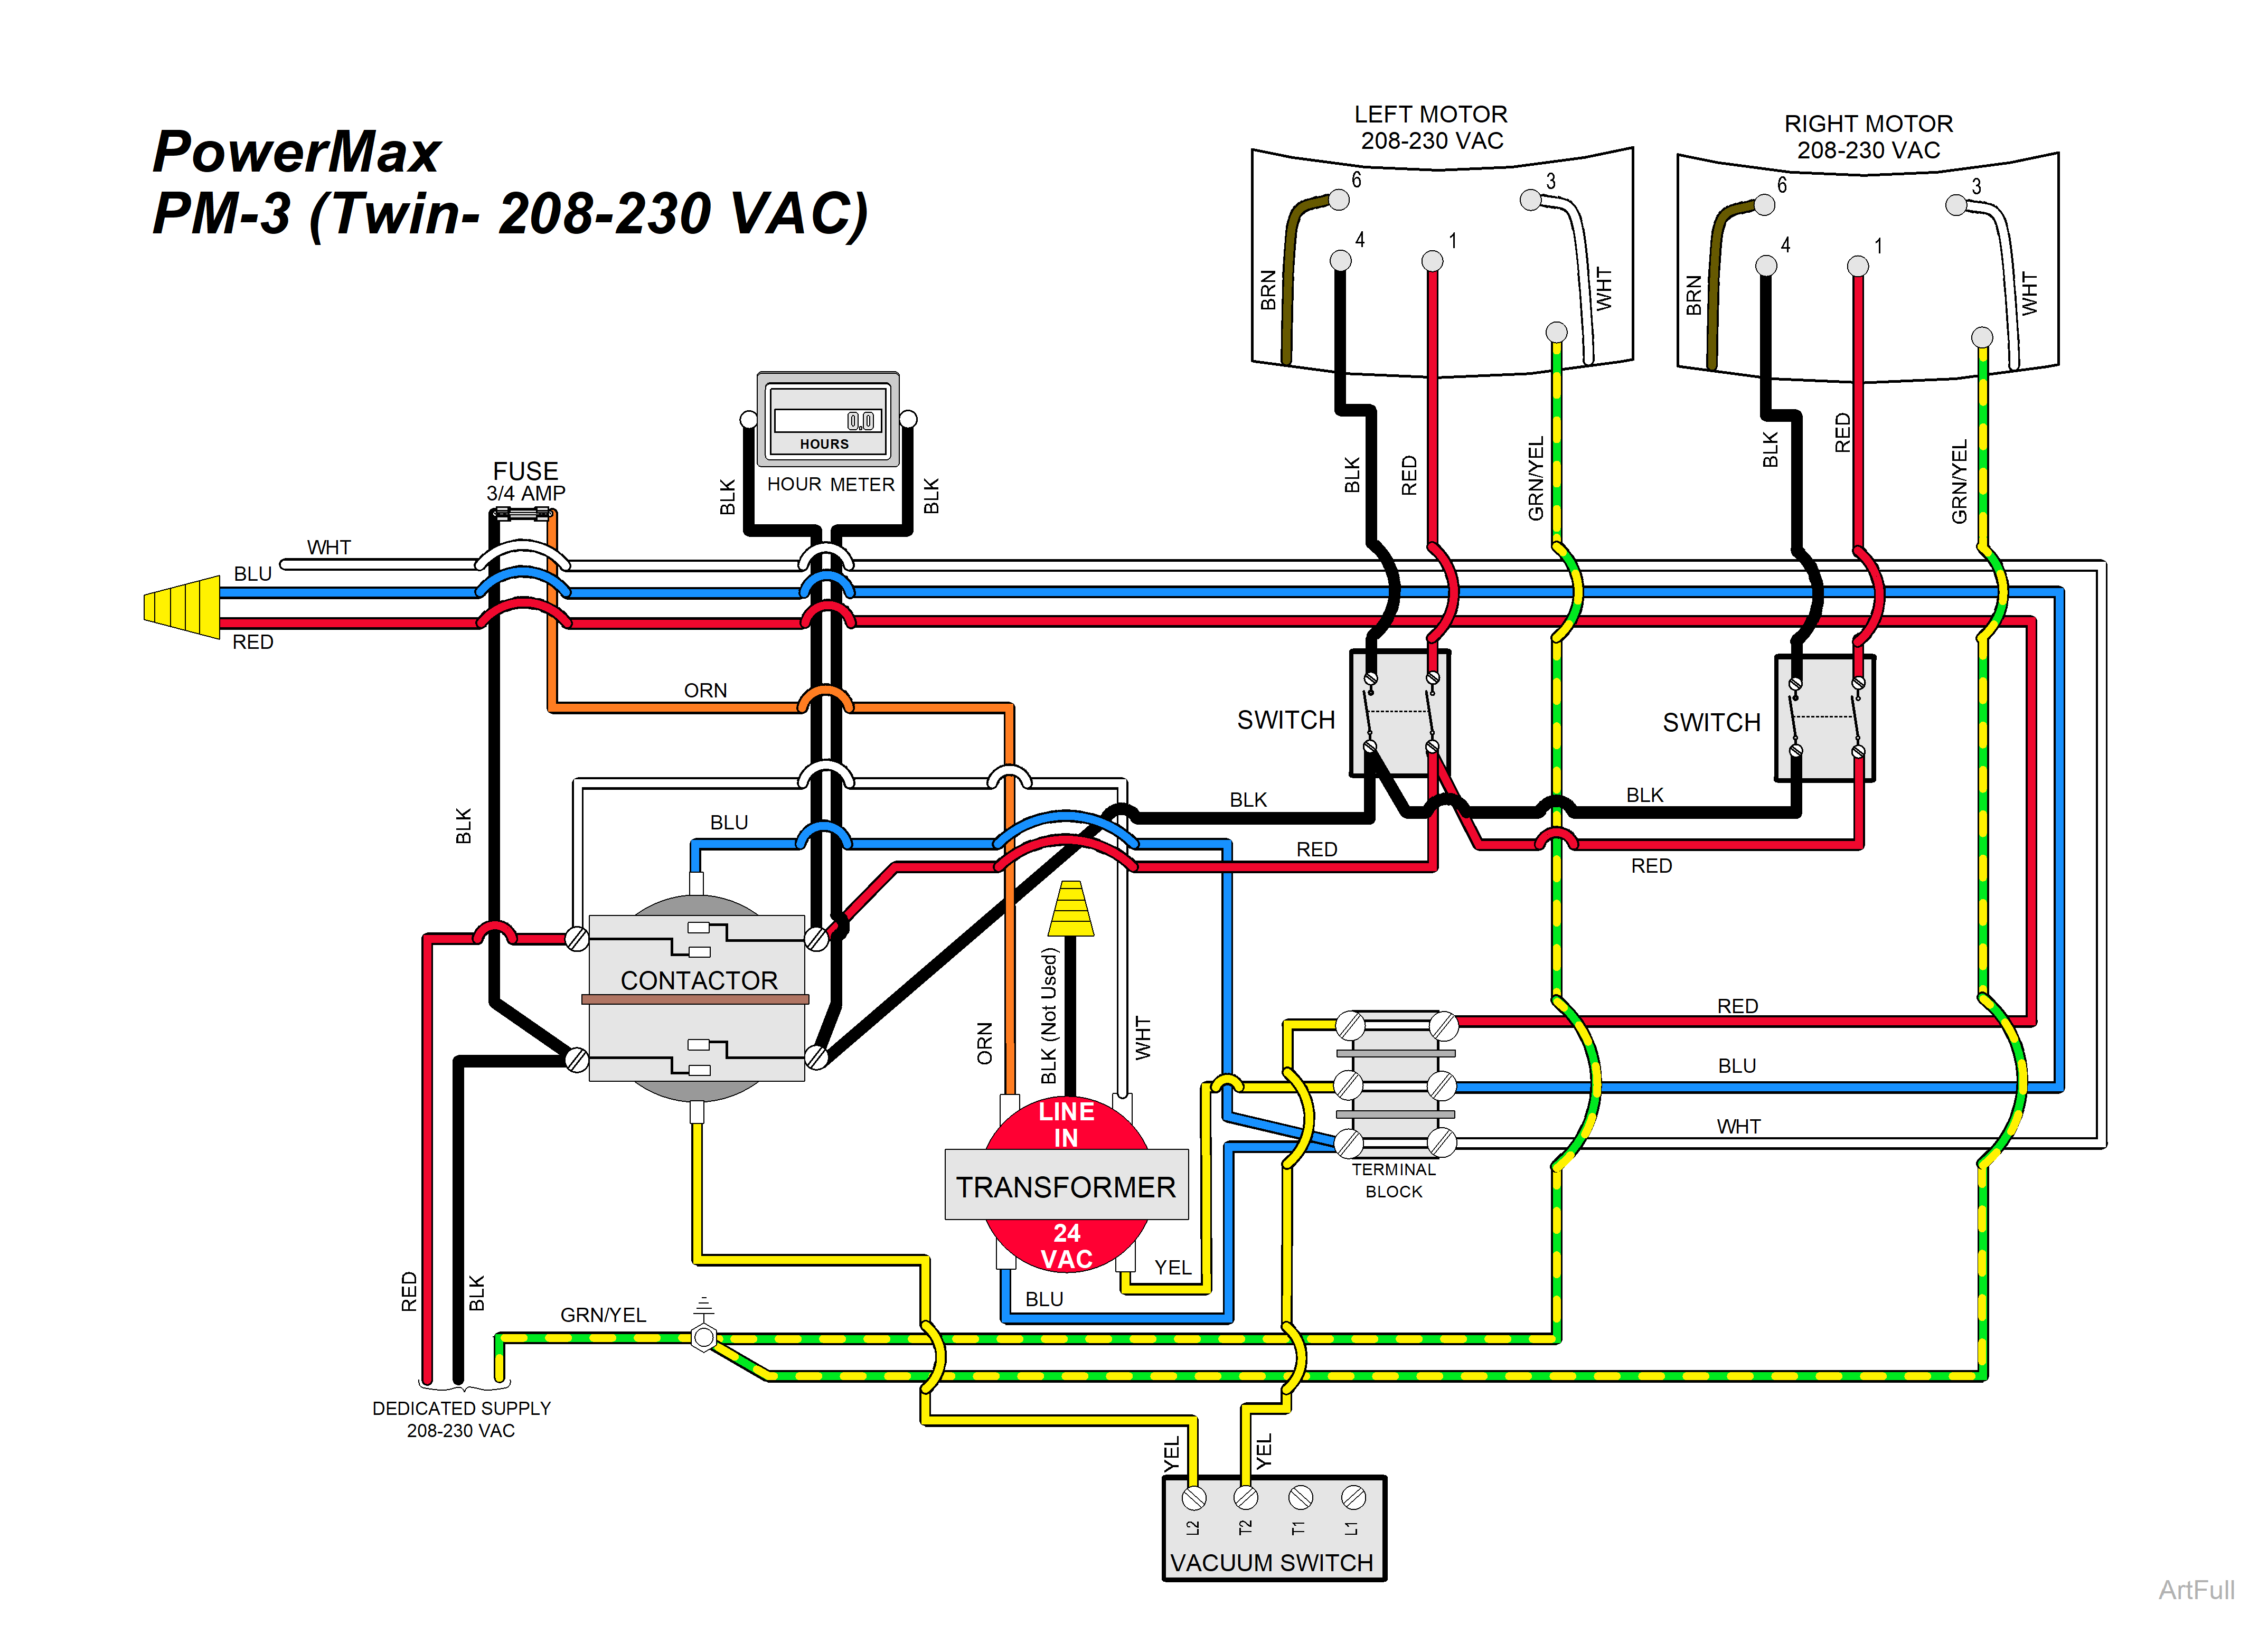 powermax pm3 55lk wiring diagram